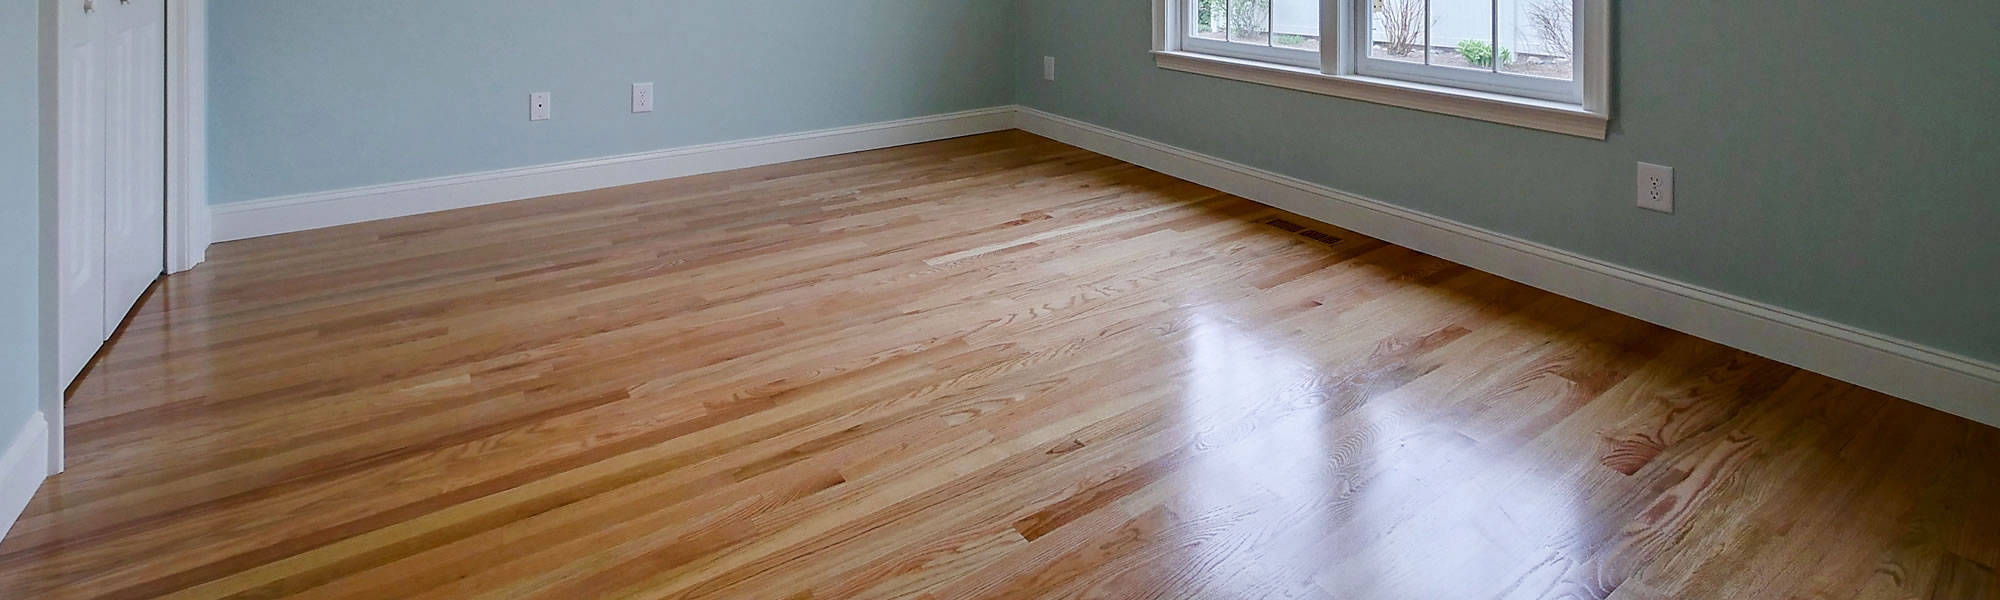 Landry Wood Flooring - New Hampshire and Massachusetts hardwood floor installations, sanding, refinishing and repairs. call 603-320-2171